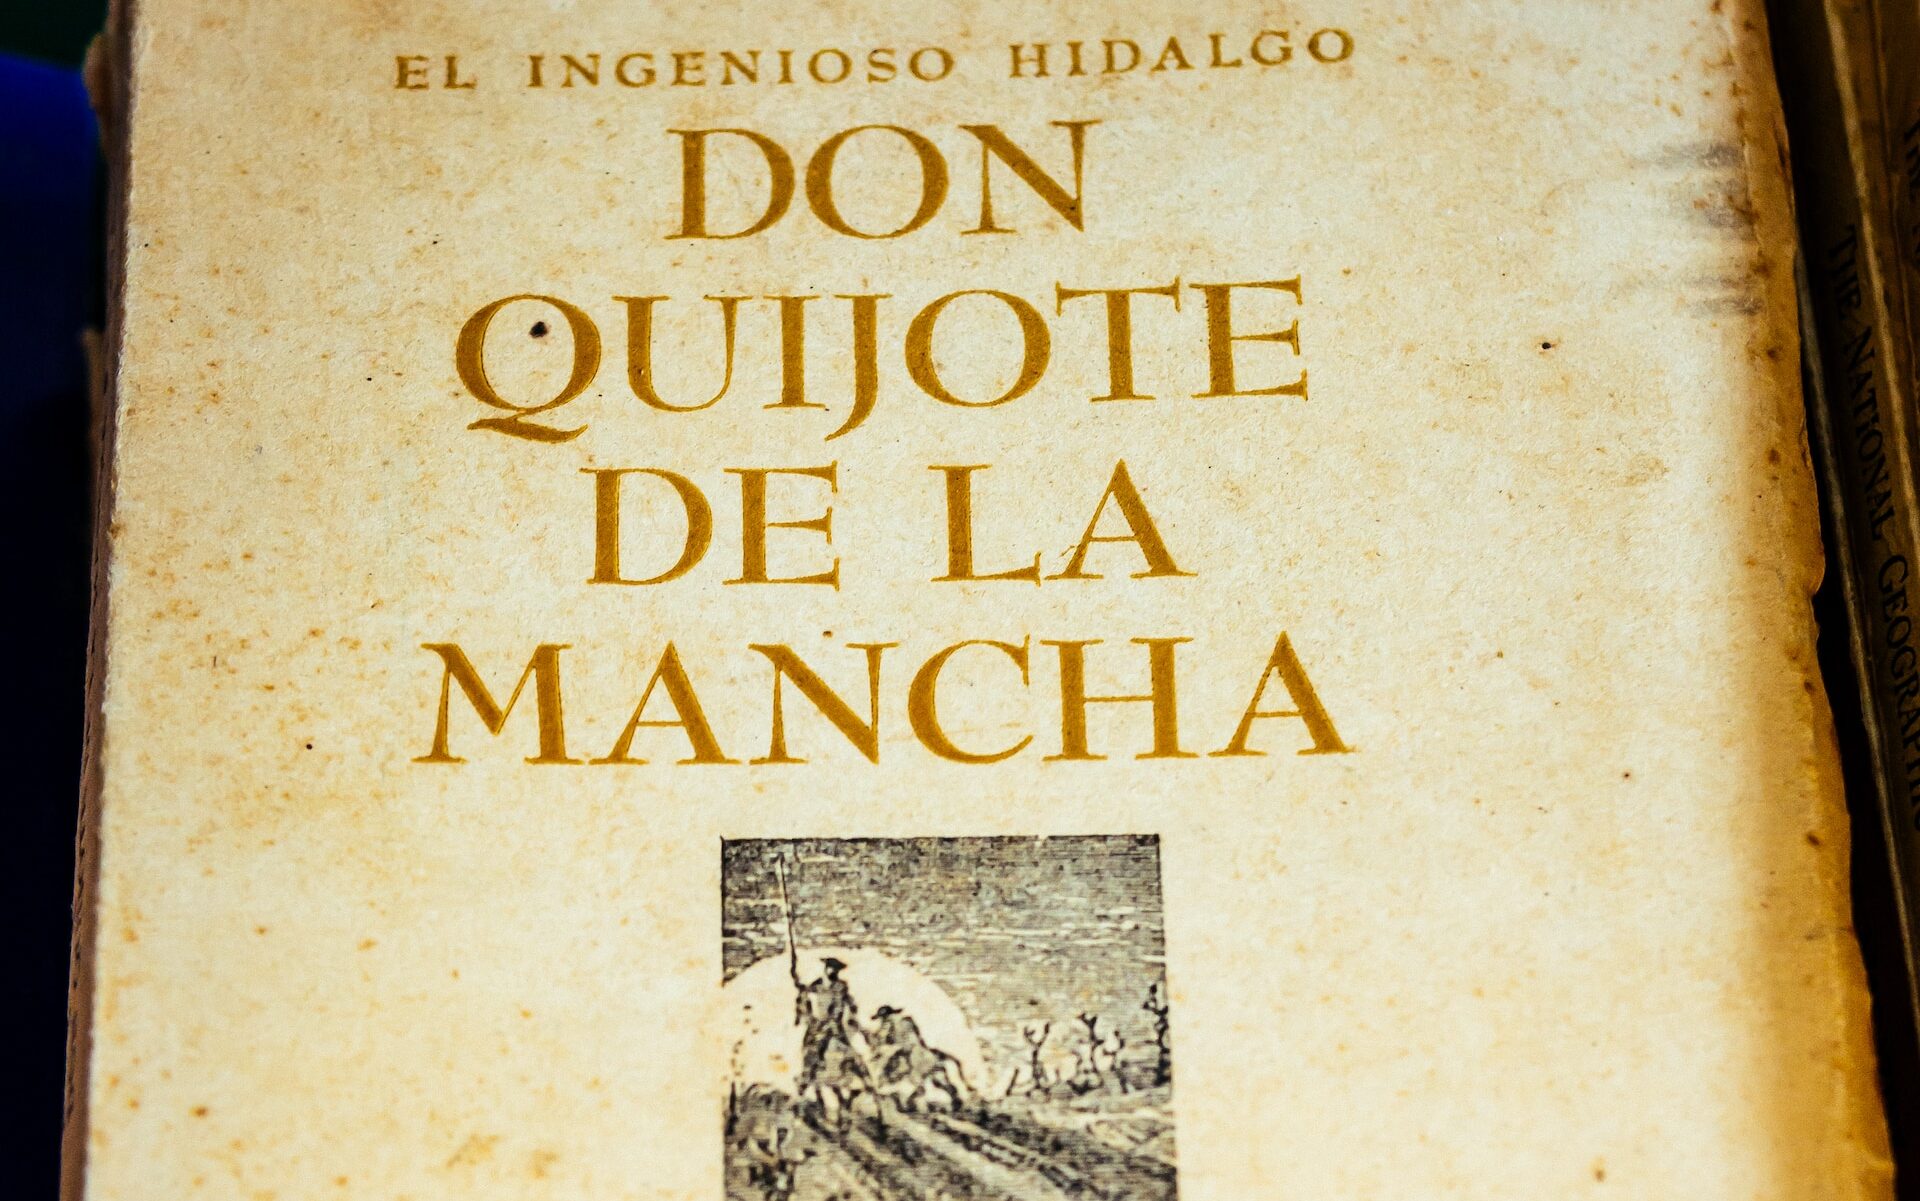 Miguel de Cervantes' "Don Quixote